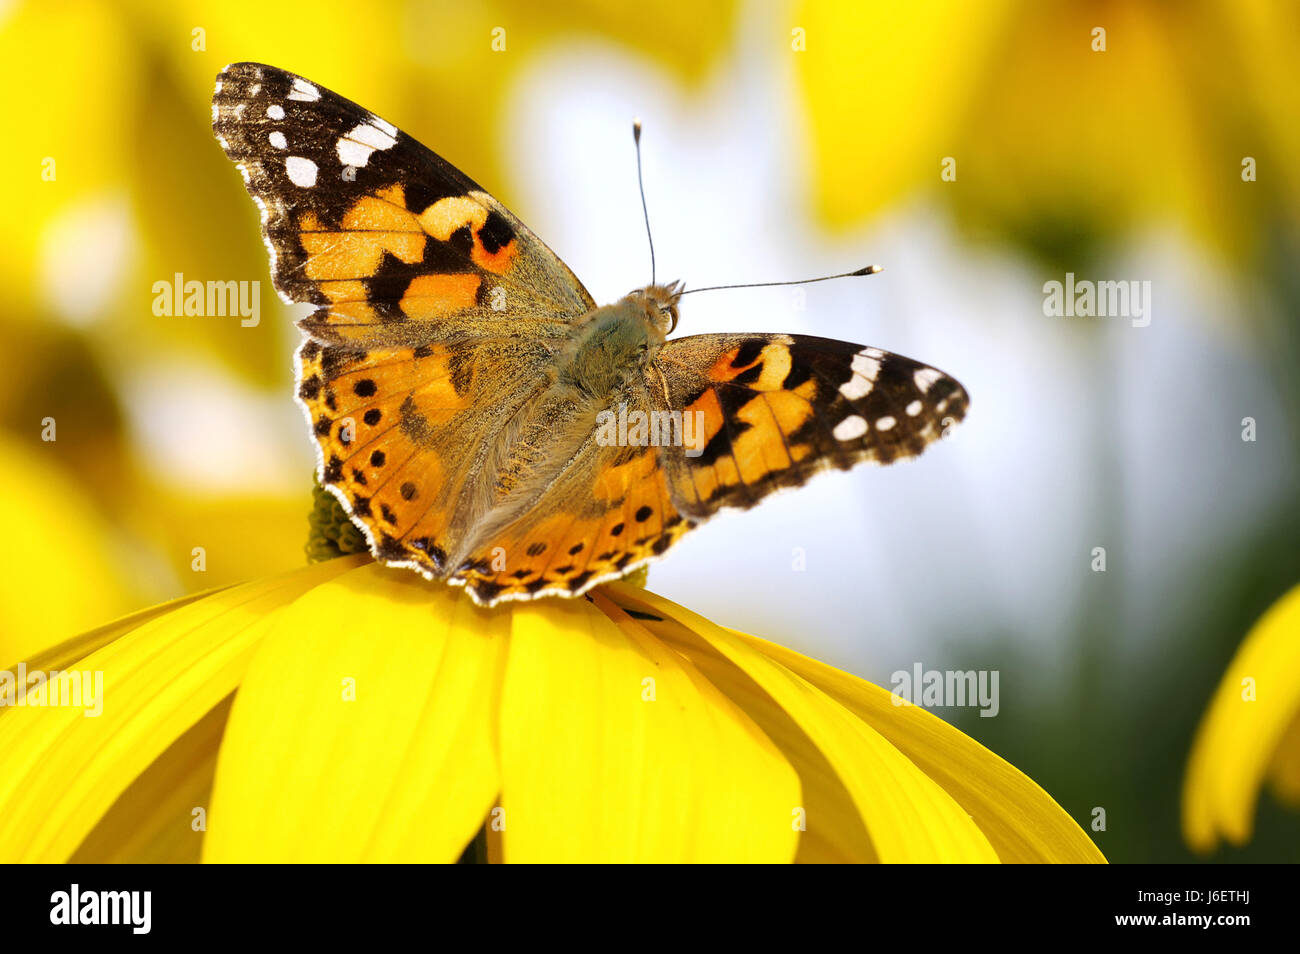 Jardin jardins jardin soleil papillon insecte brille brille lucent Banque D'Images